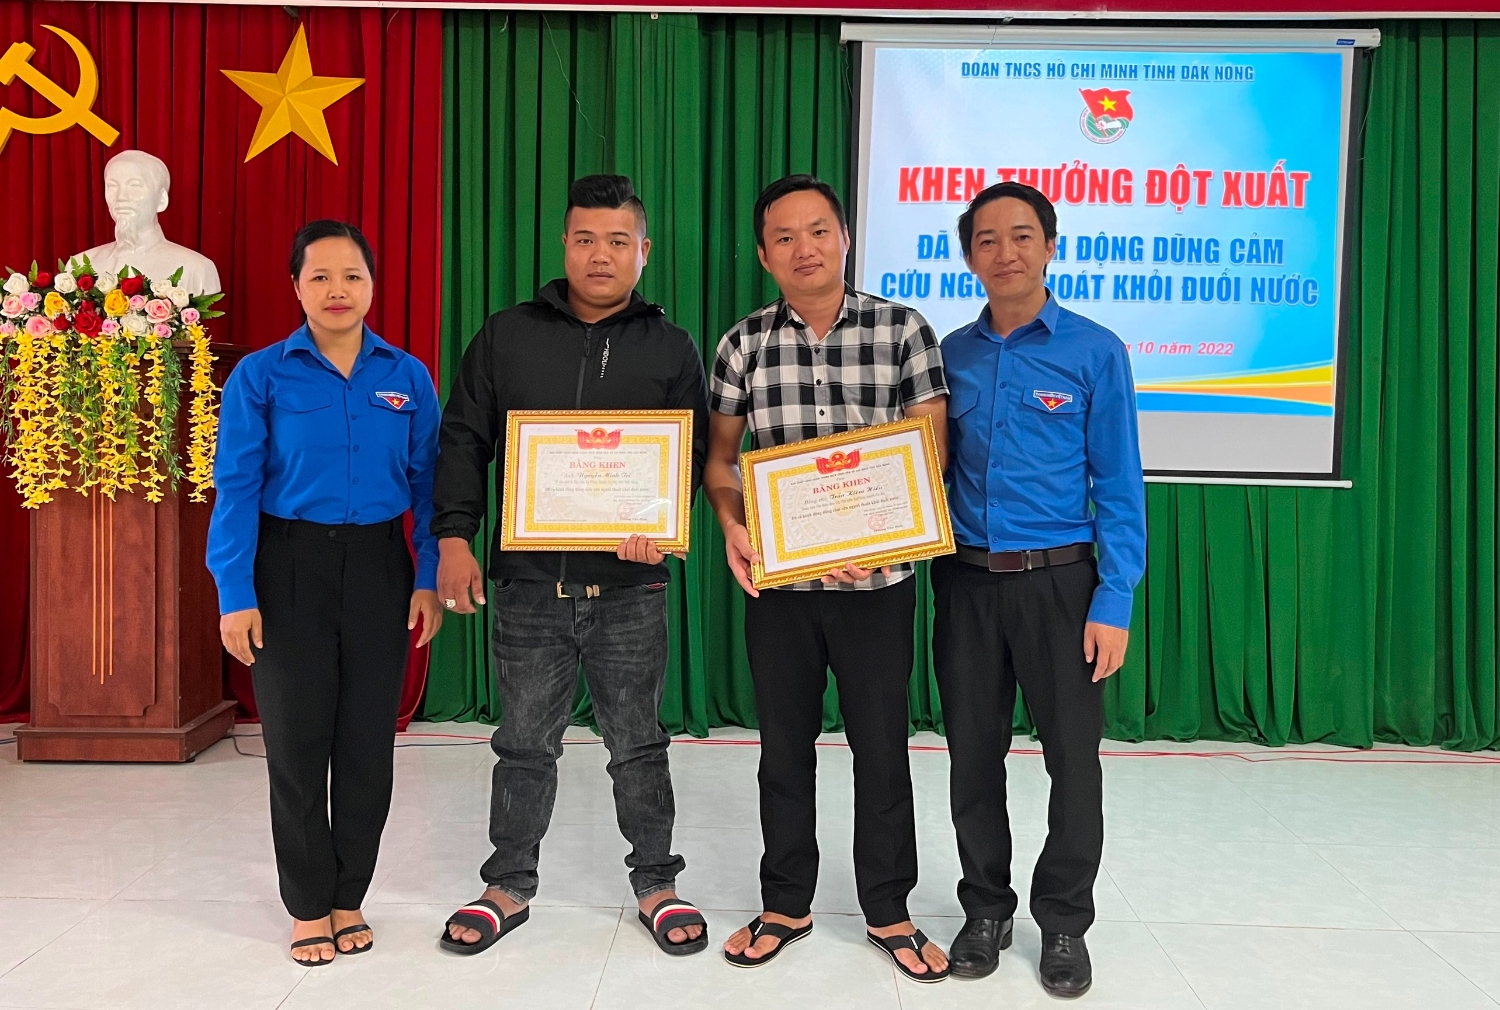 Đồng chí Trương Văn Bình - Phó Bí thư Tỉnh đoàn, Chủ tịch Hội Liên hiệp Thanh niên Việt Nam tỉnh (ngoài cùng bên phải) trao tặng Bằng khen cho 2 thanh niên có hành động dũng cảm